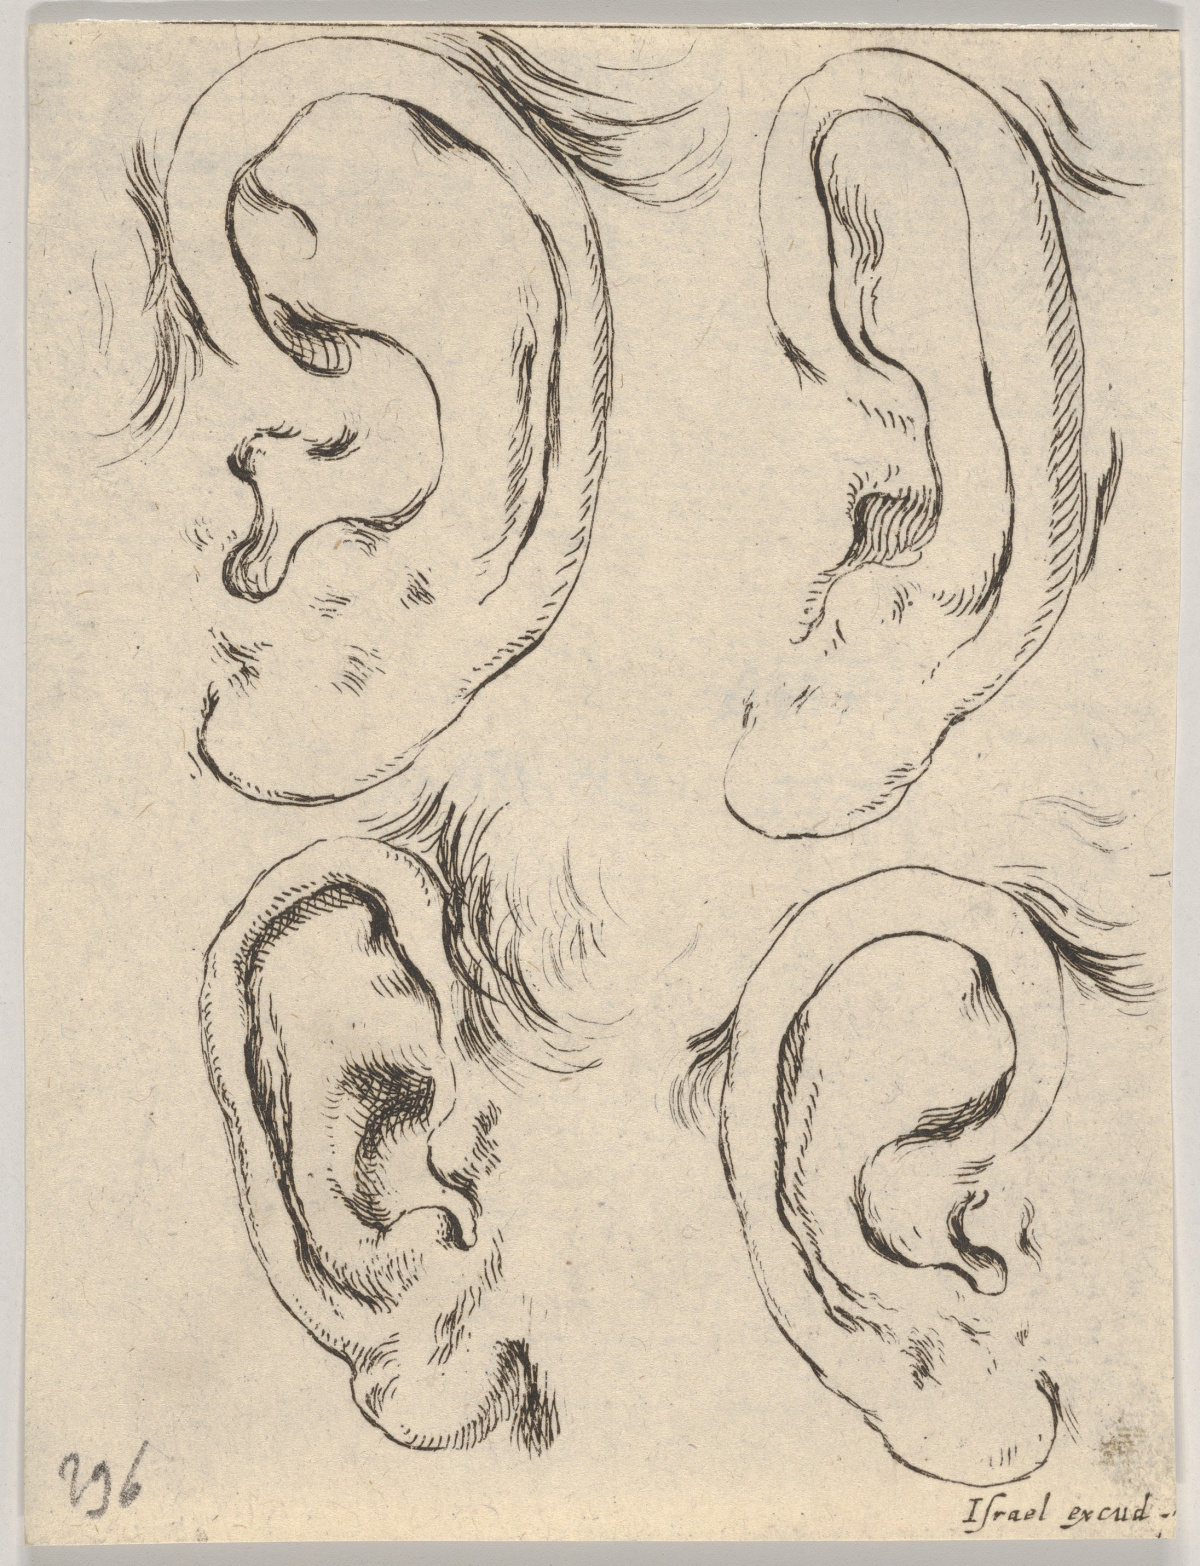 Four ears for listening (photo: Stefano della Bella/Wikimedia).